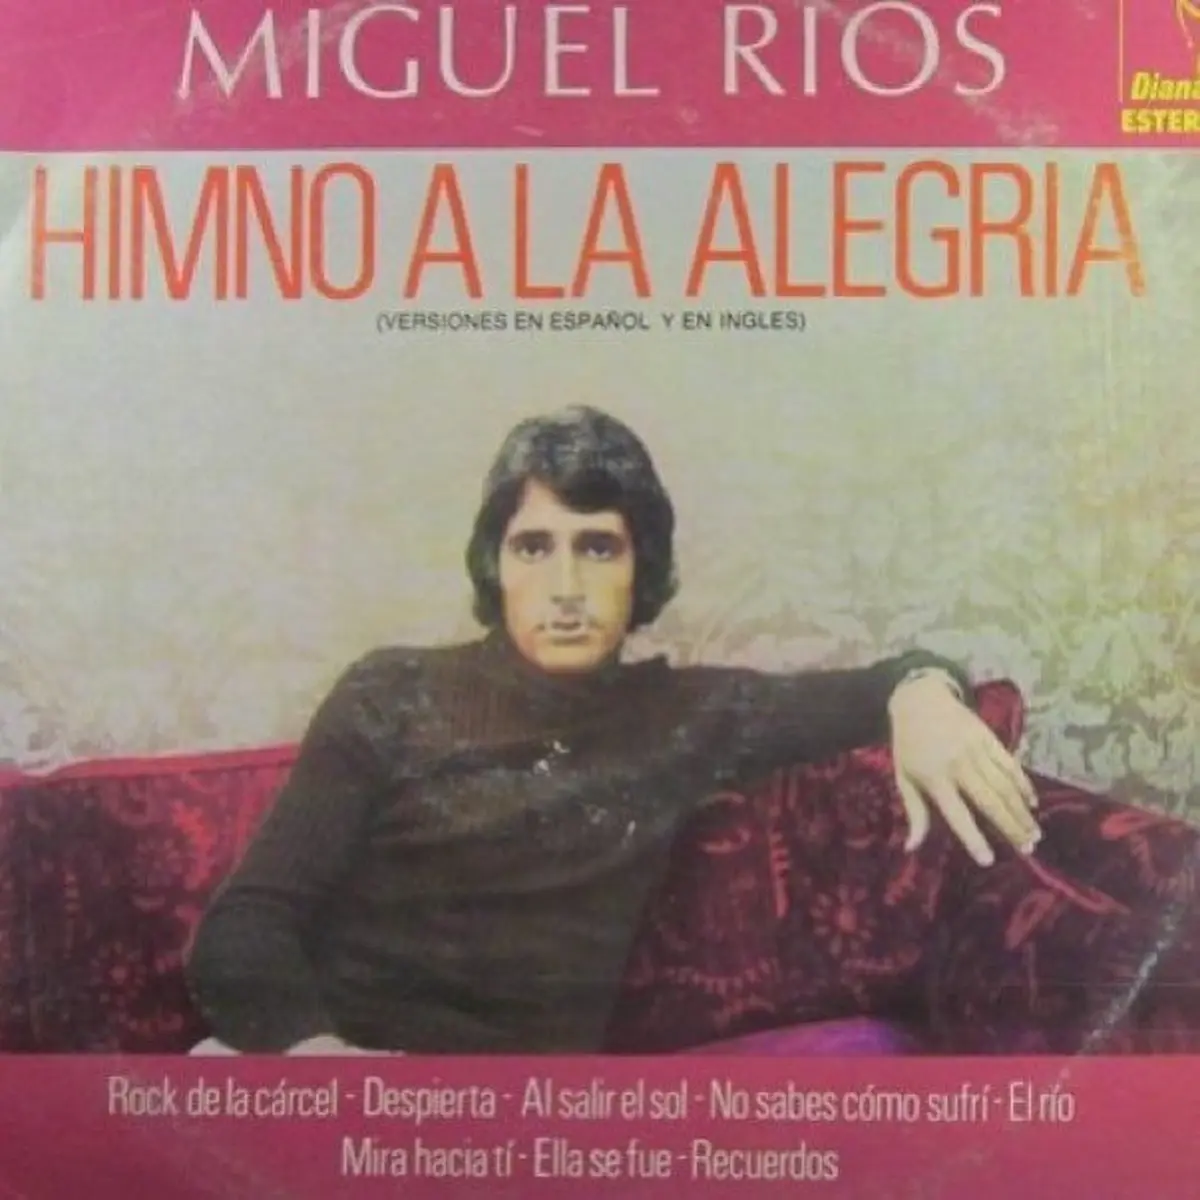 Miguel Ríos Himno a la alegría